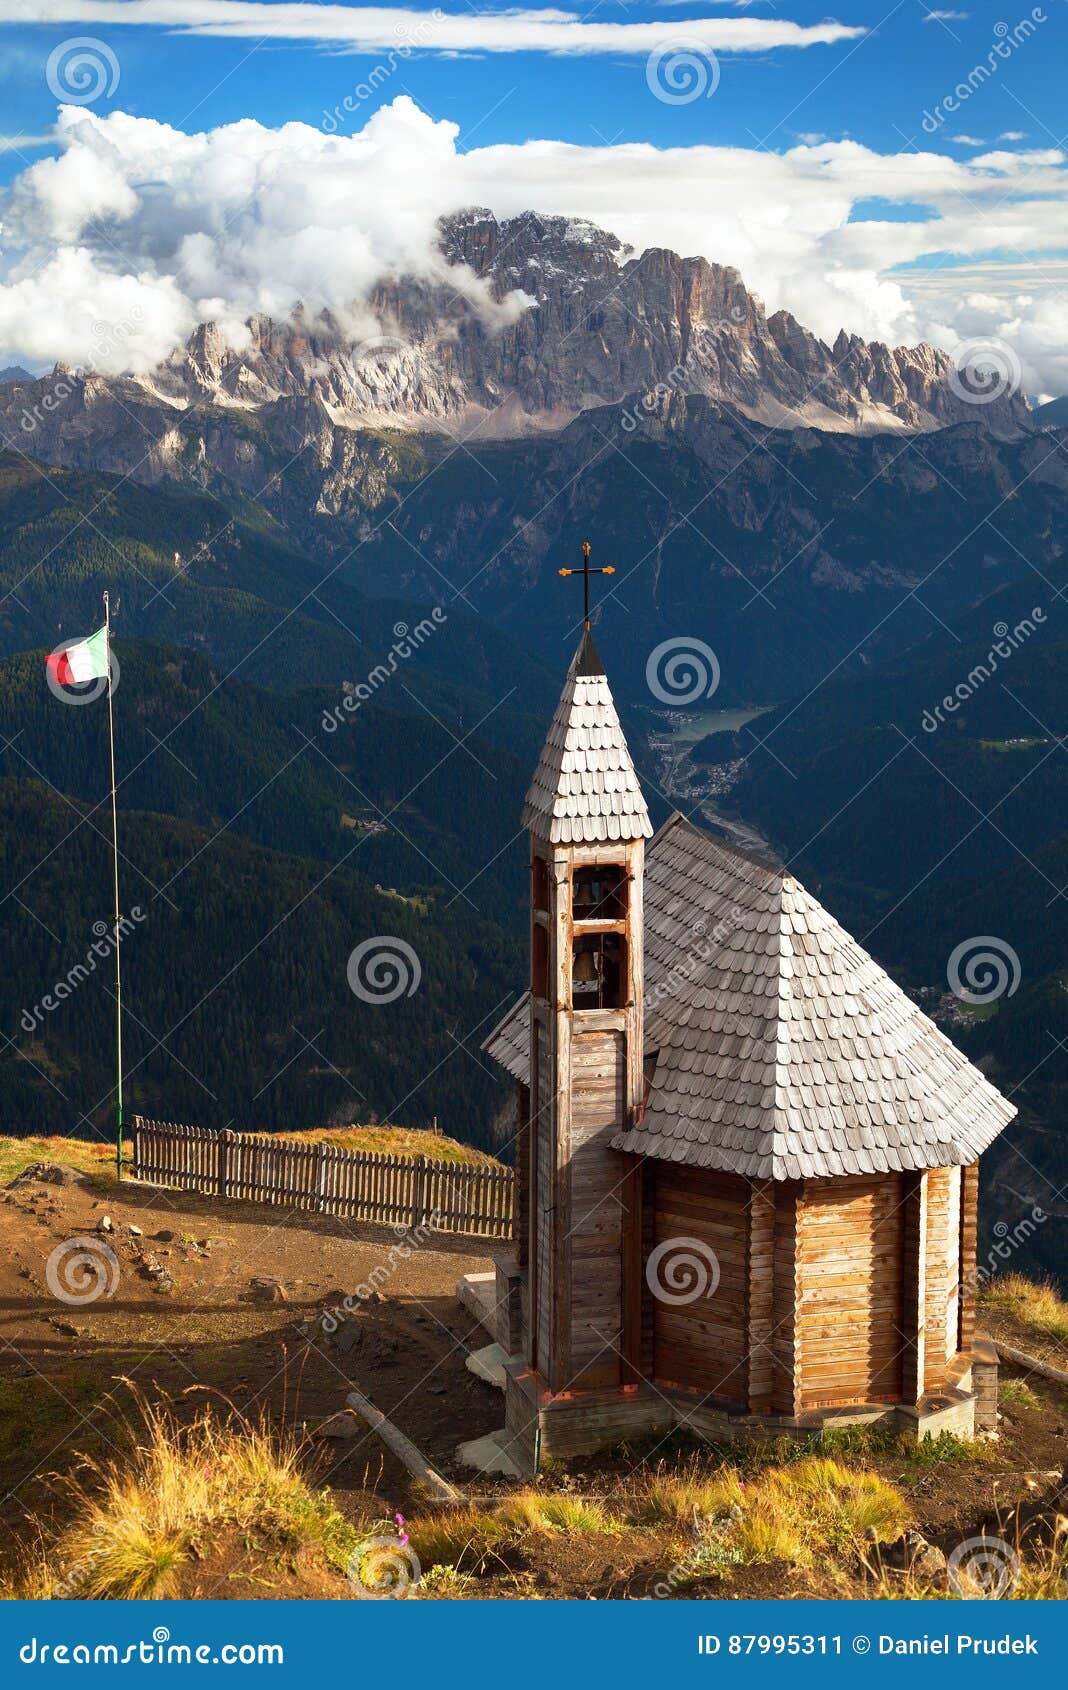 church or chapel on the mountain top col di lana